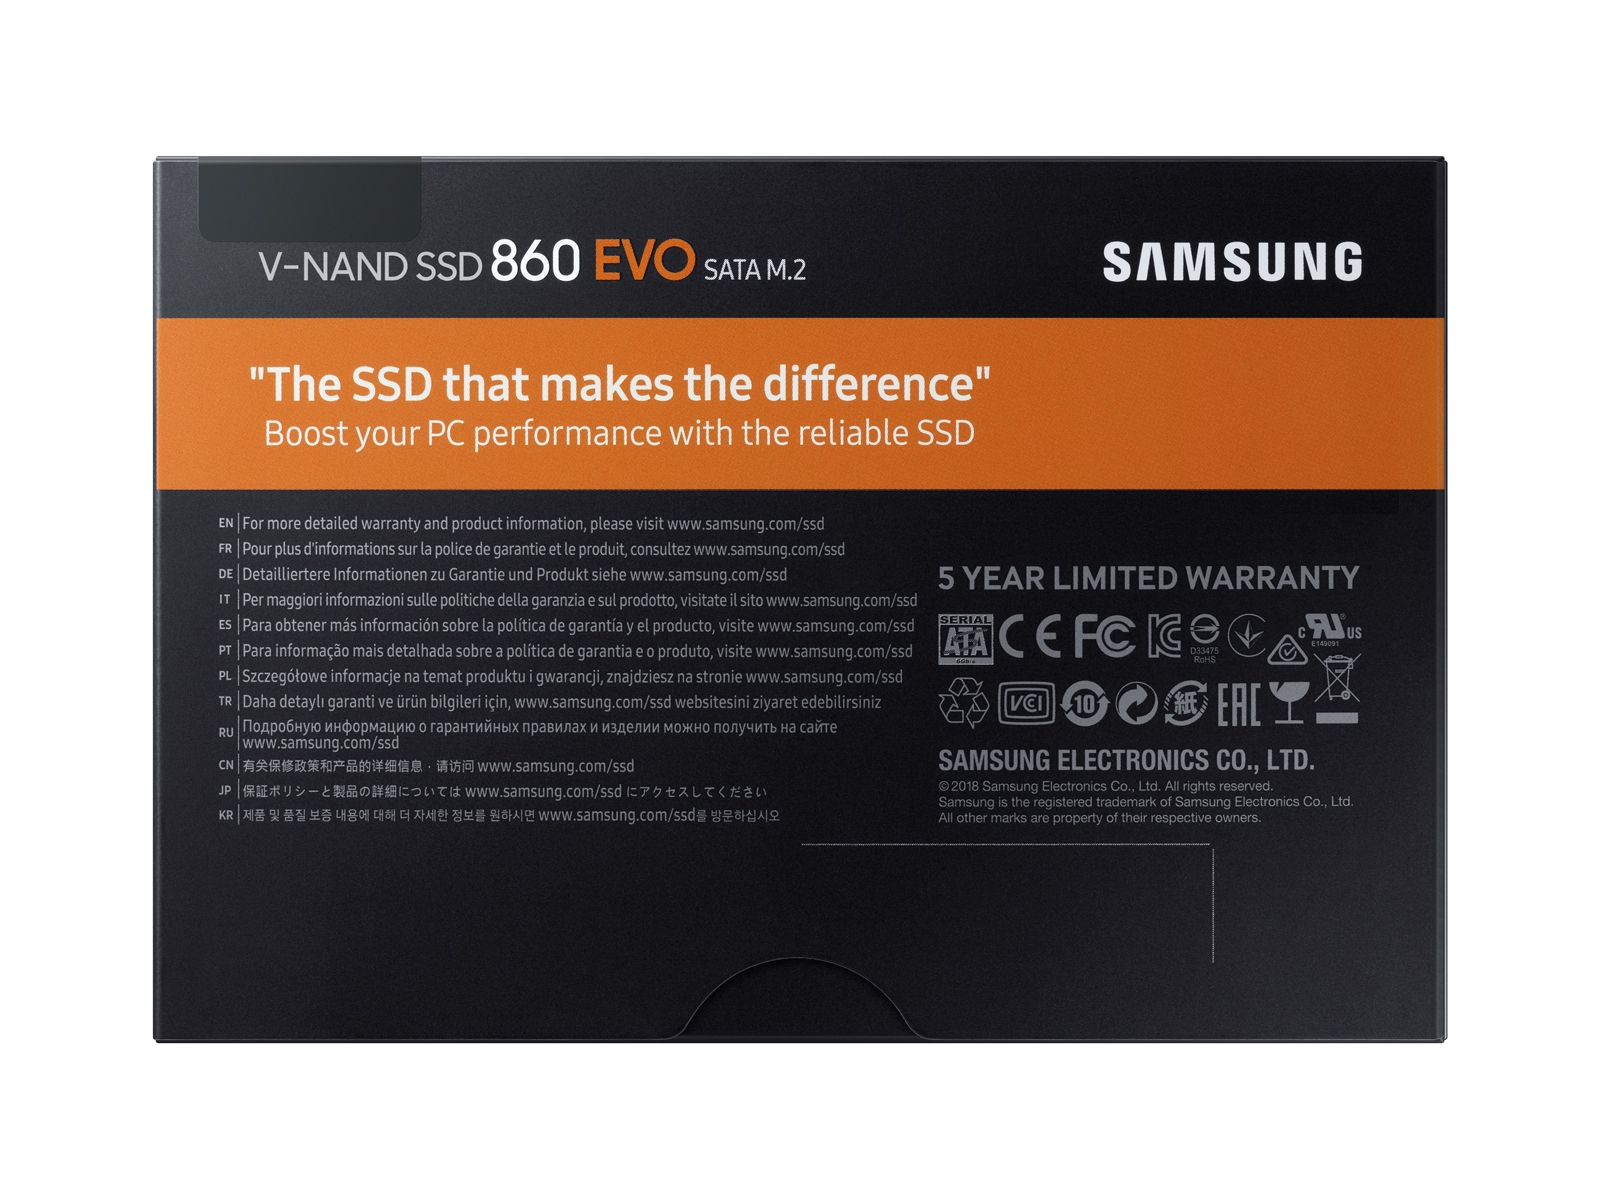 860 EVO SATA 250GB Memory & Storage - | Samsung US